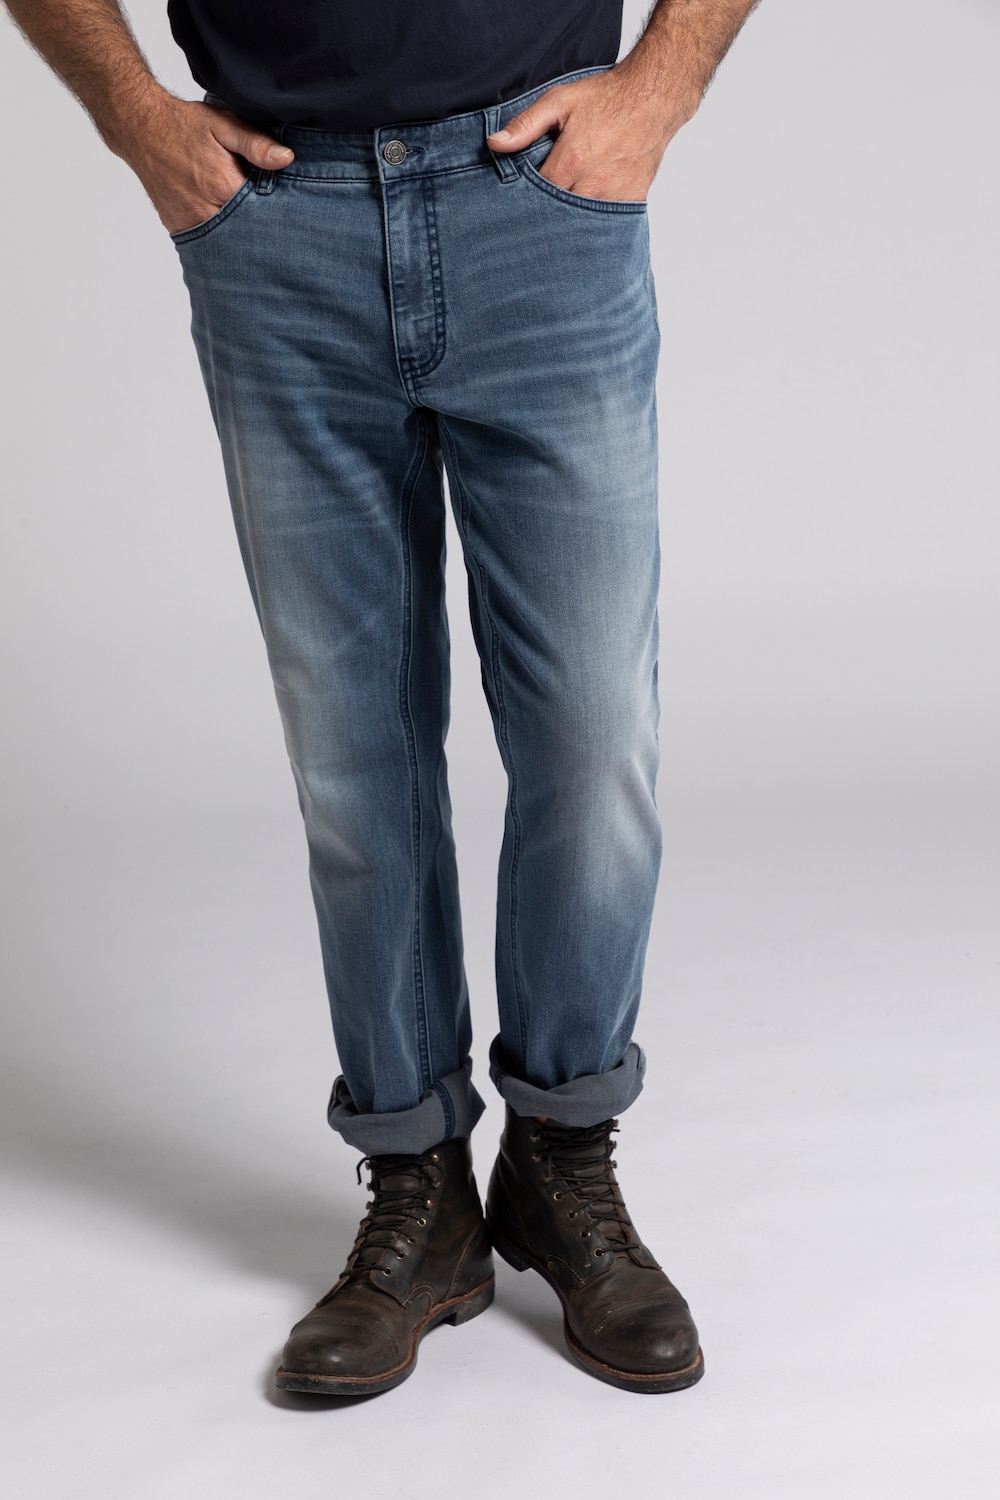 Grote Maten jeans, Heren, grijs, Maat: 70, Katoen/Polyester, JP1880